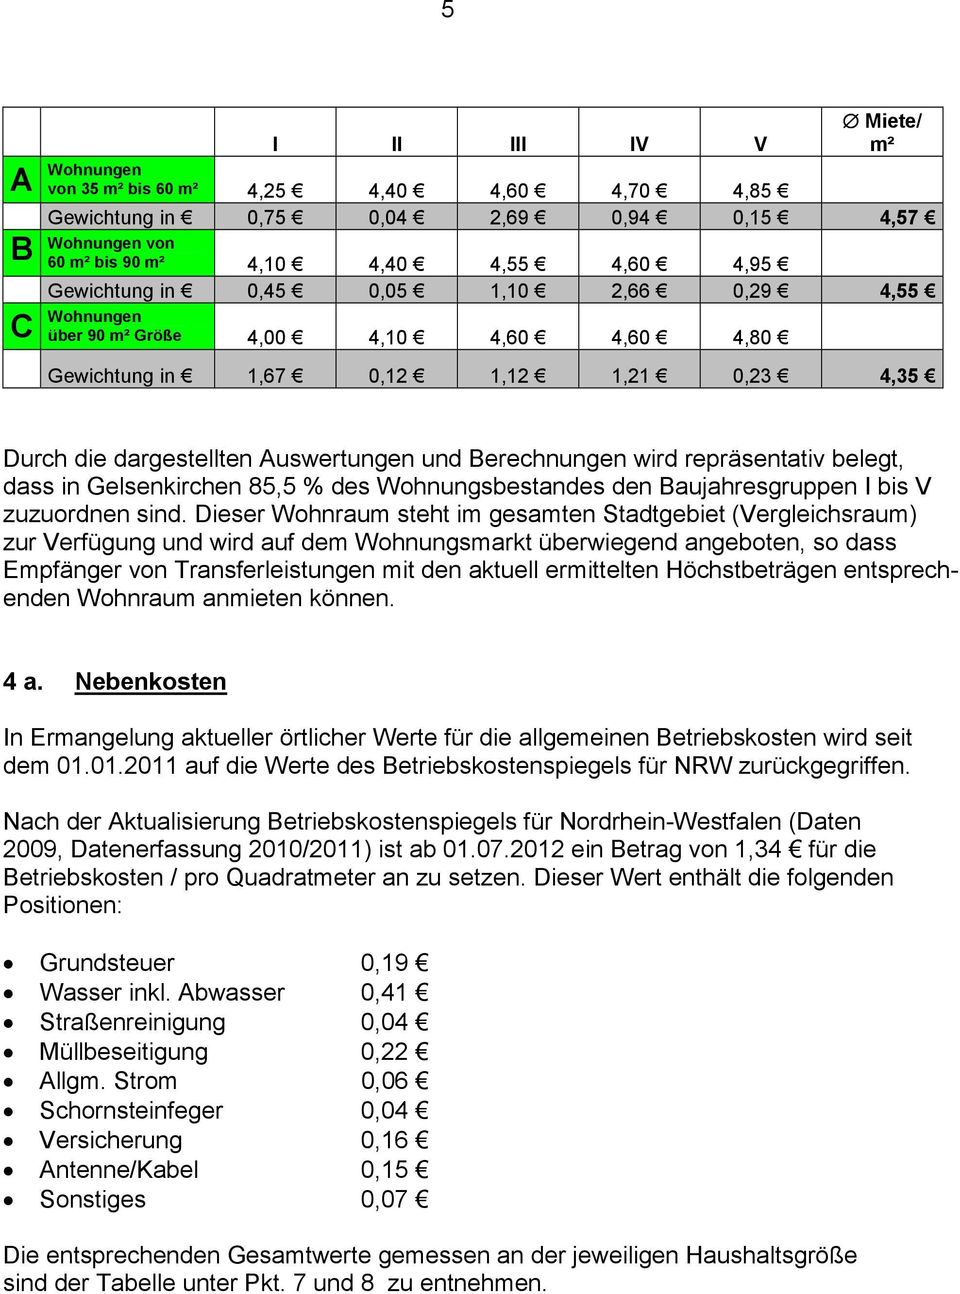 belegt, dass in Gelsenkirchen 85,5 % des Wohnungsbestandes den Baujahresgruppen I bis V zuzuordnen sind.